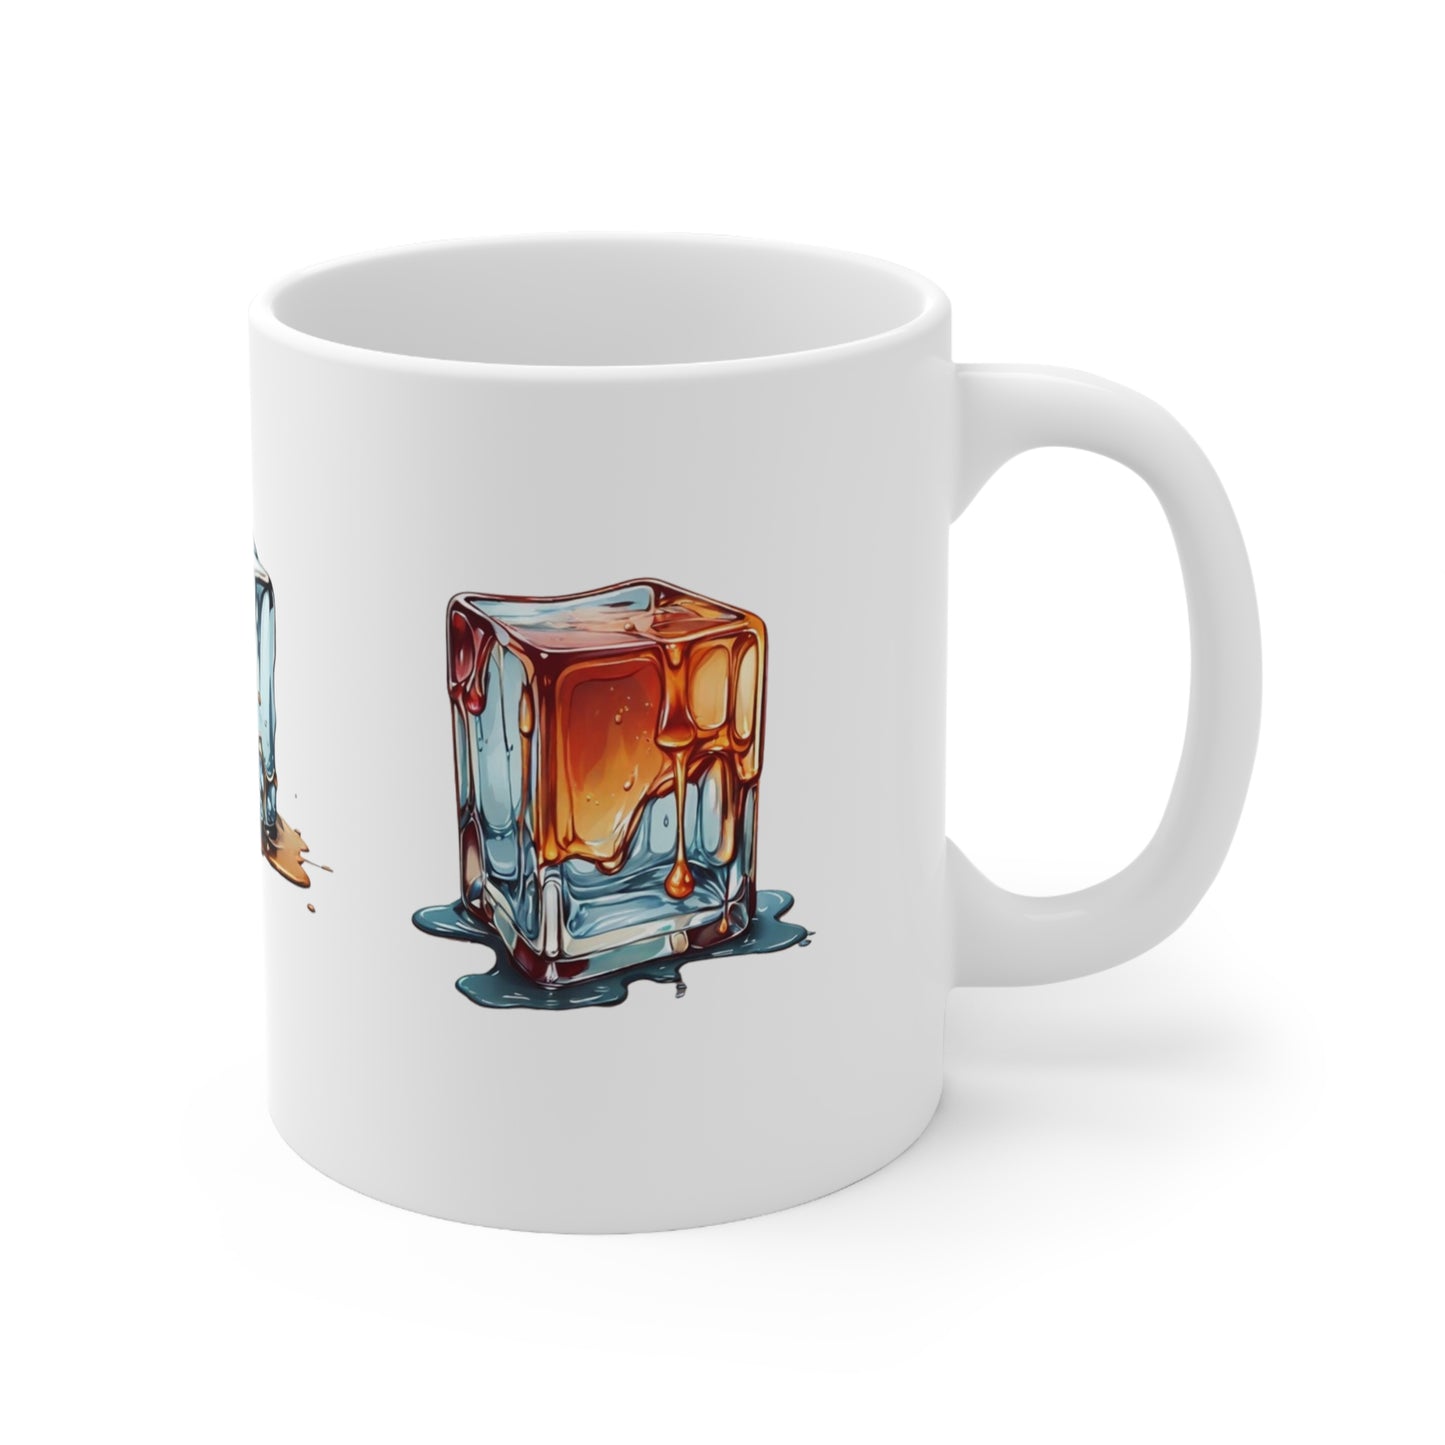 Melting Ice Cubes Mug - Ceramic Coffee Mug 11oz